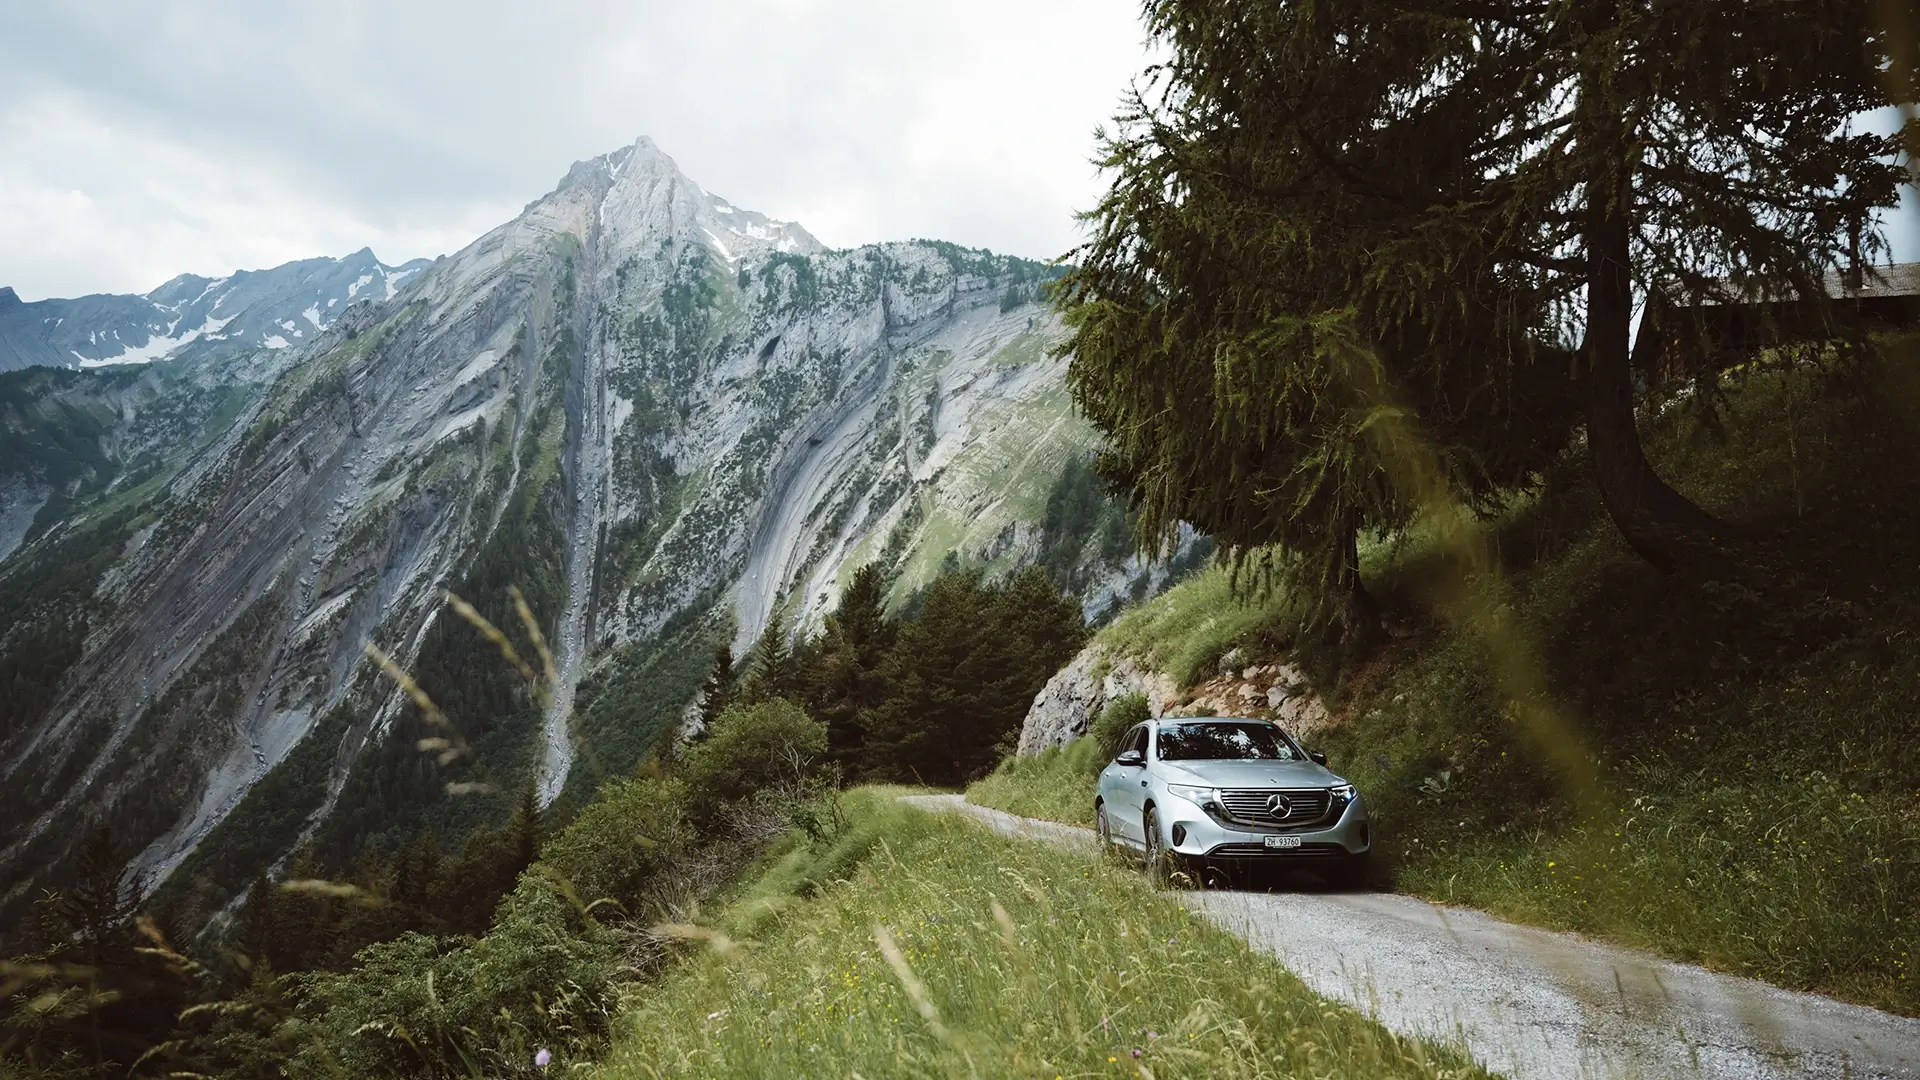 E-Auto auf Bergstraße in den Alpen Berge im Hintergrund